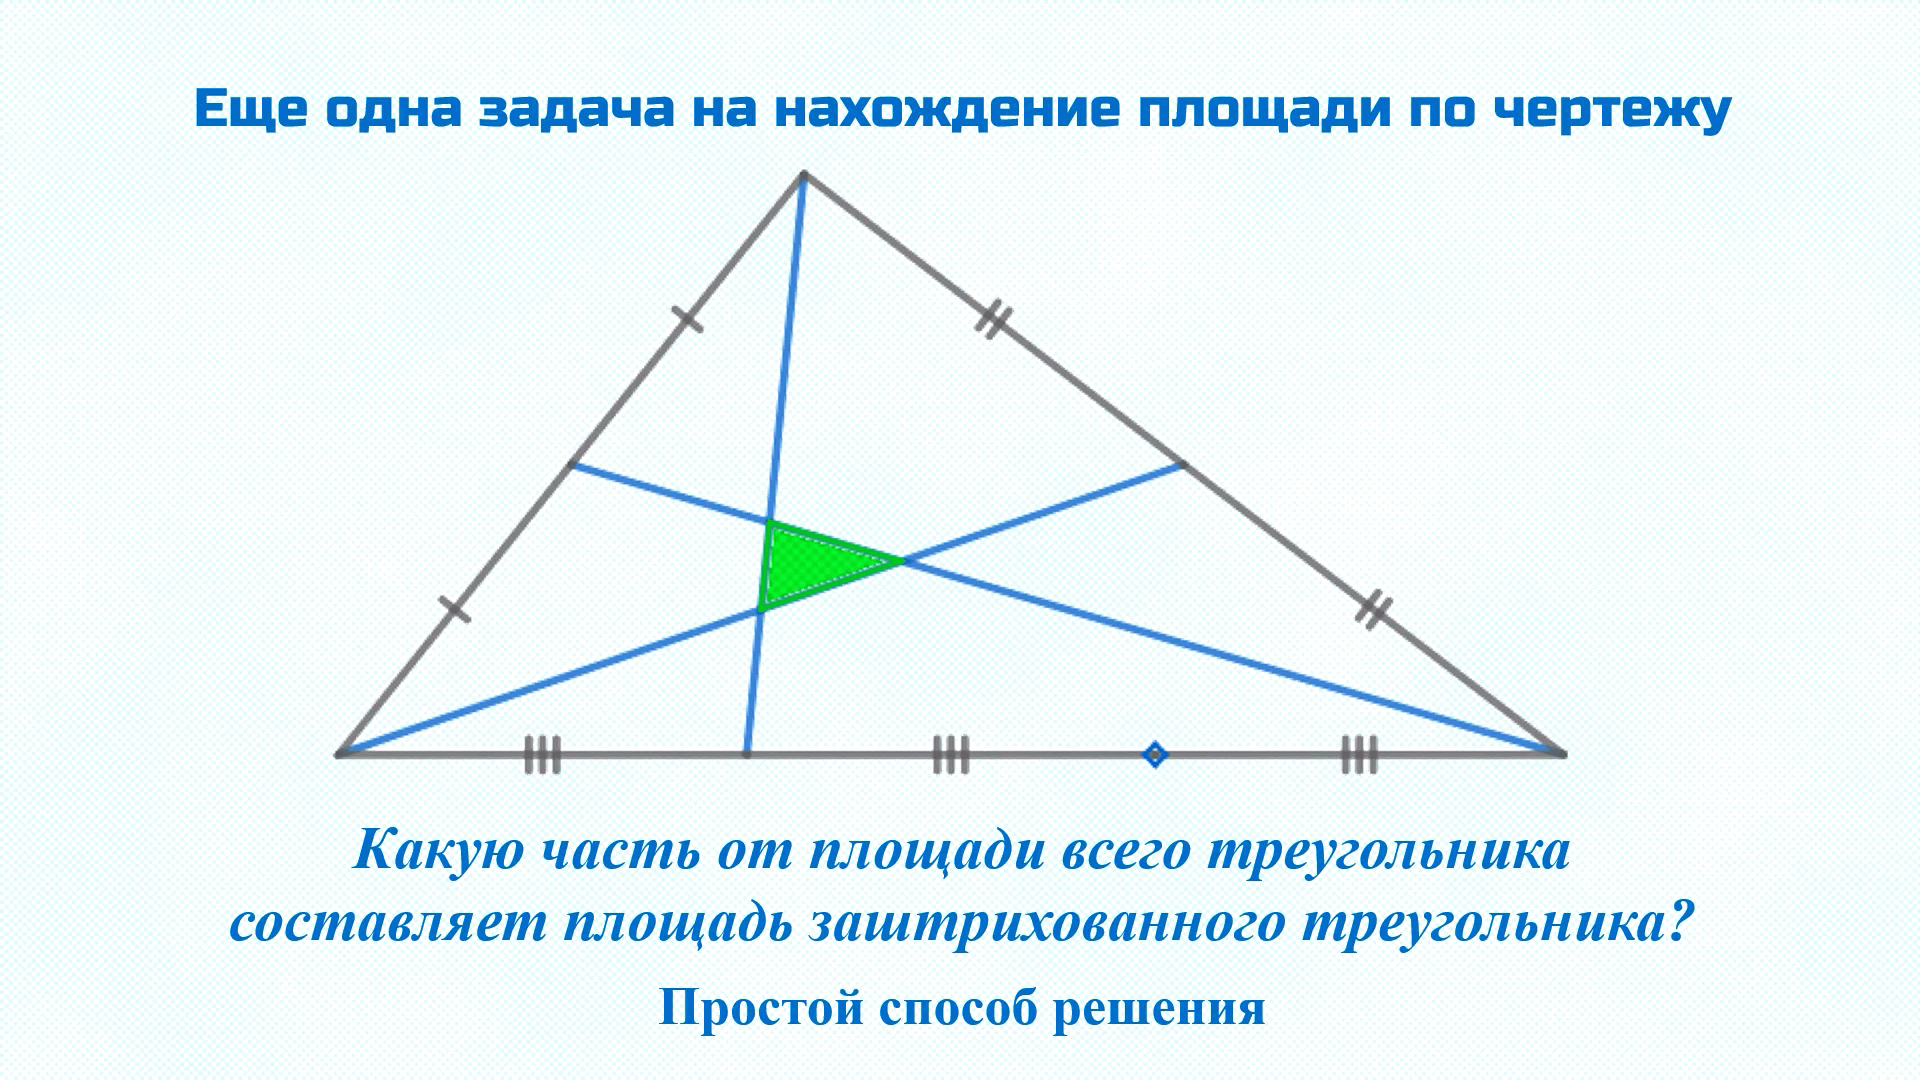 Как определить тупоугольный треугольник. Равносторонний тупоугольный треугольник. Медиана тупоугольного треугольника. Биссектриса тупоугольного треугольника. Площадь тупоугольного треугольника.